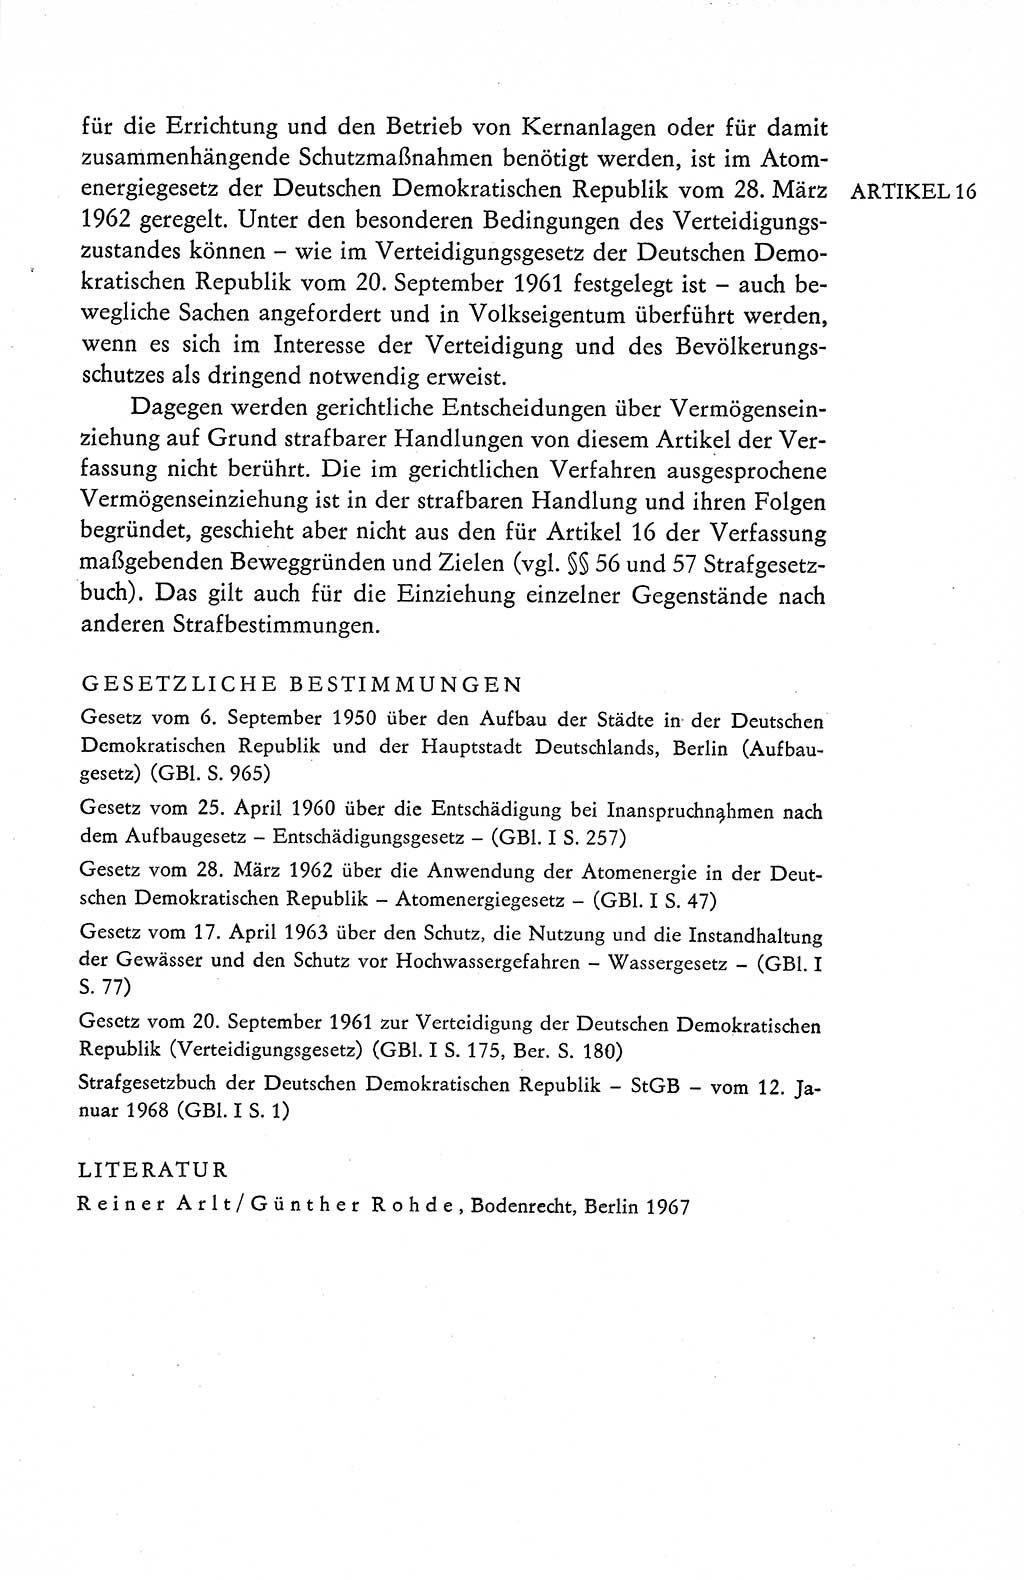 Verfassung der Deutschen Demokratischen Republik (DDR), Dokumente, Kommentar 1969, Band 1, Seite 389 (Verf. DDR Dok. Komm. 1969, Bd. 1, S. 389)